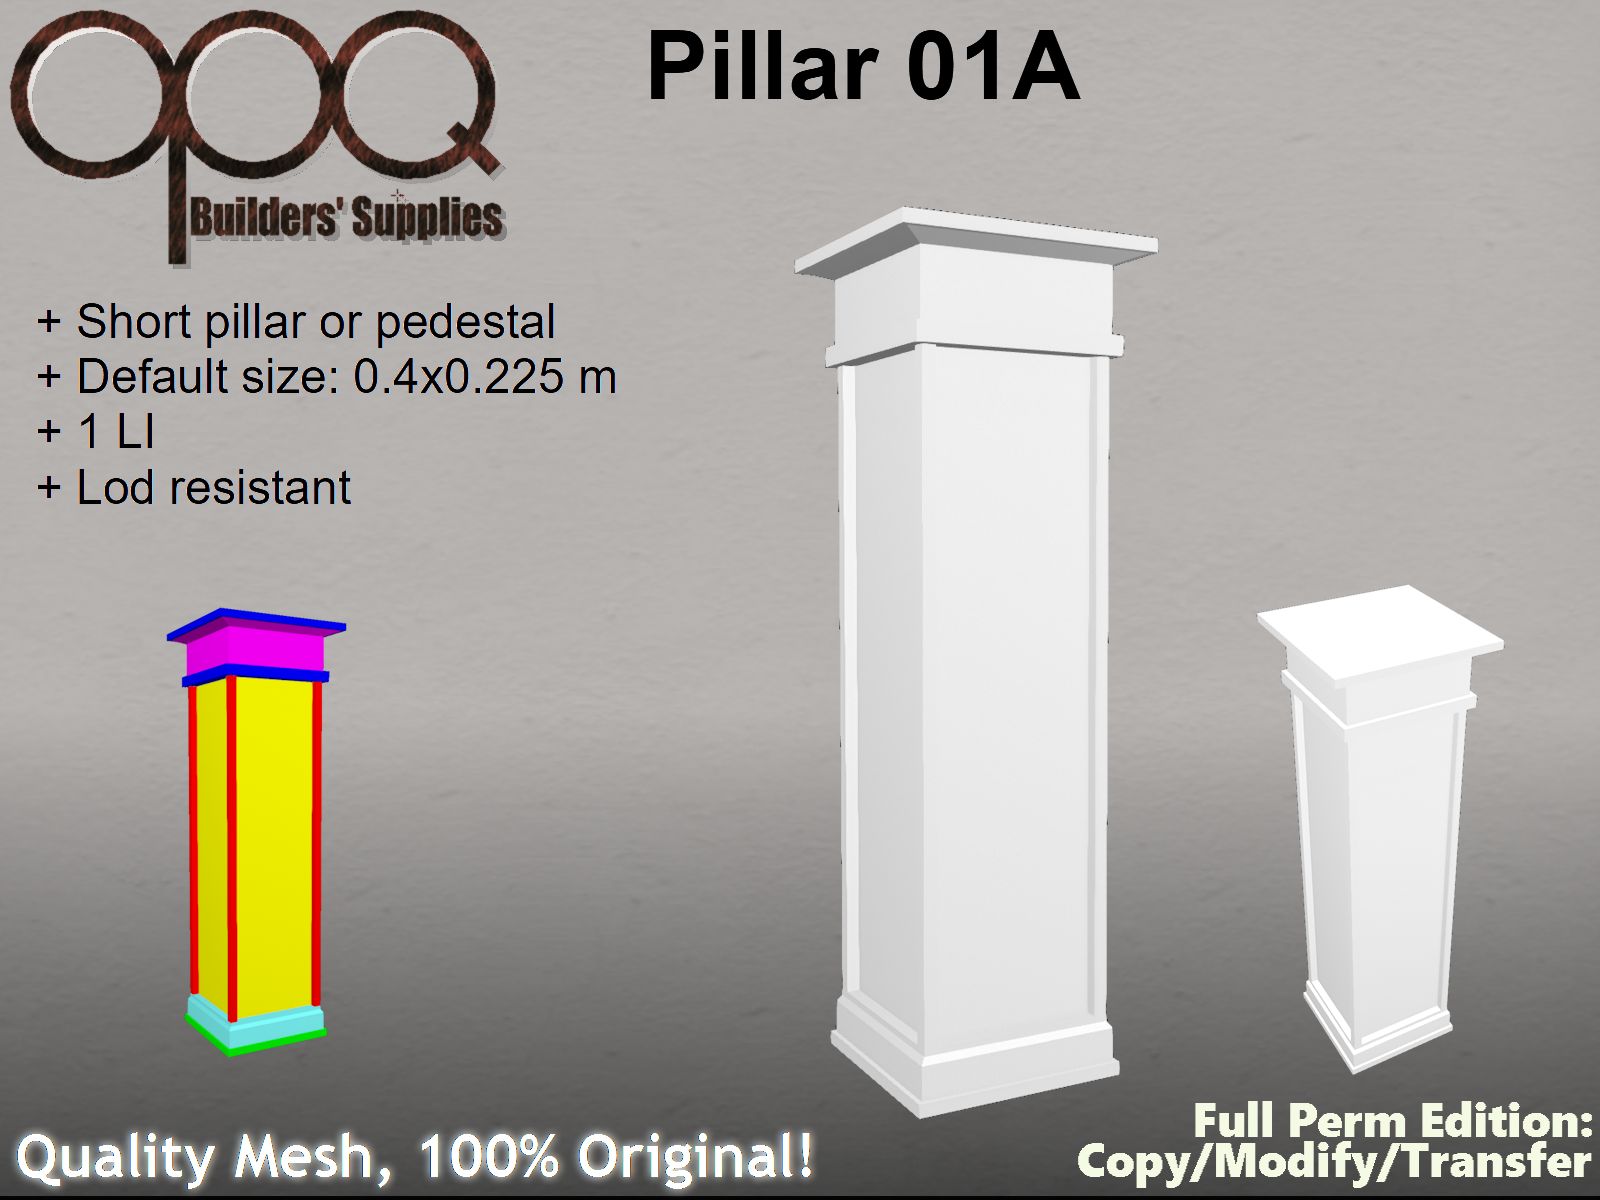 OPQ Pillar 01A 4-12 Poster.jpg